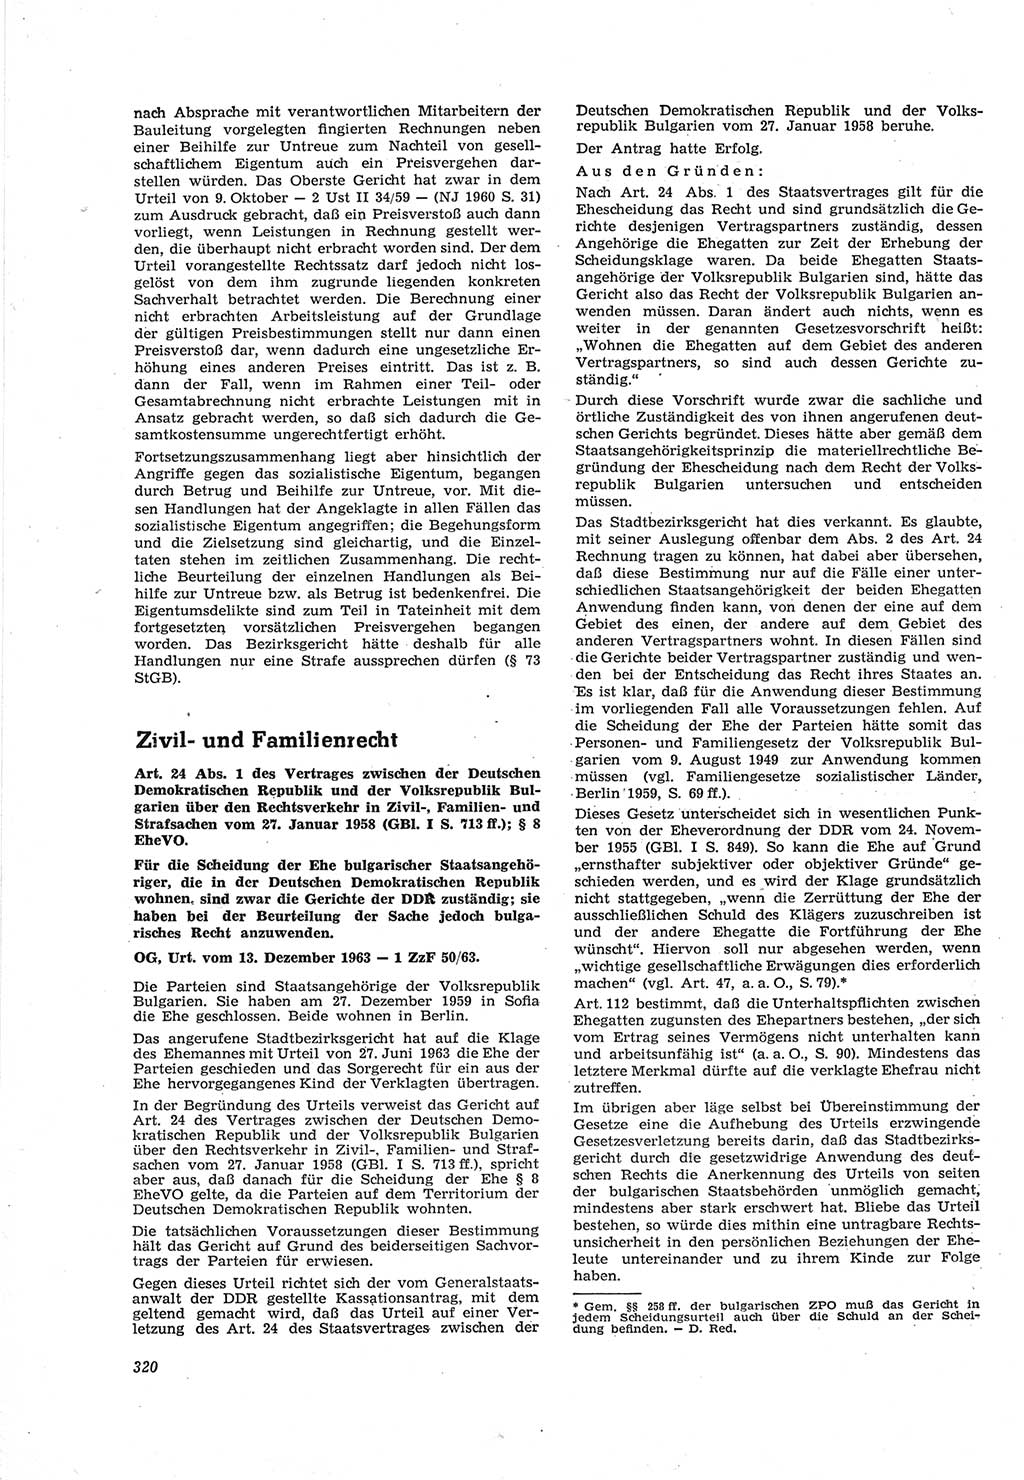 Neue Justiz (NJ), Zeitschrift für Recht und Rechtswissenschaft [Deutsche Demokratische Republik (DDR)], 18. Jahrgang 1964, Seite 320 (NJ DDR 1964, S. 320)